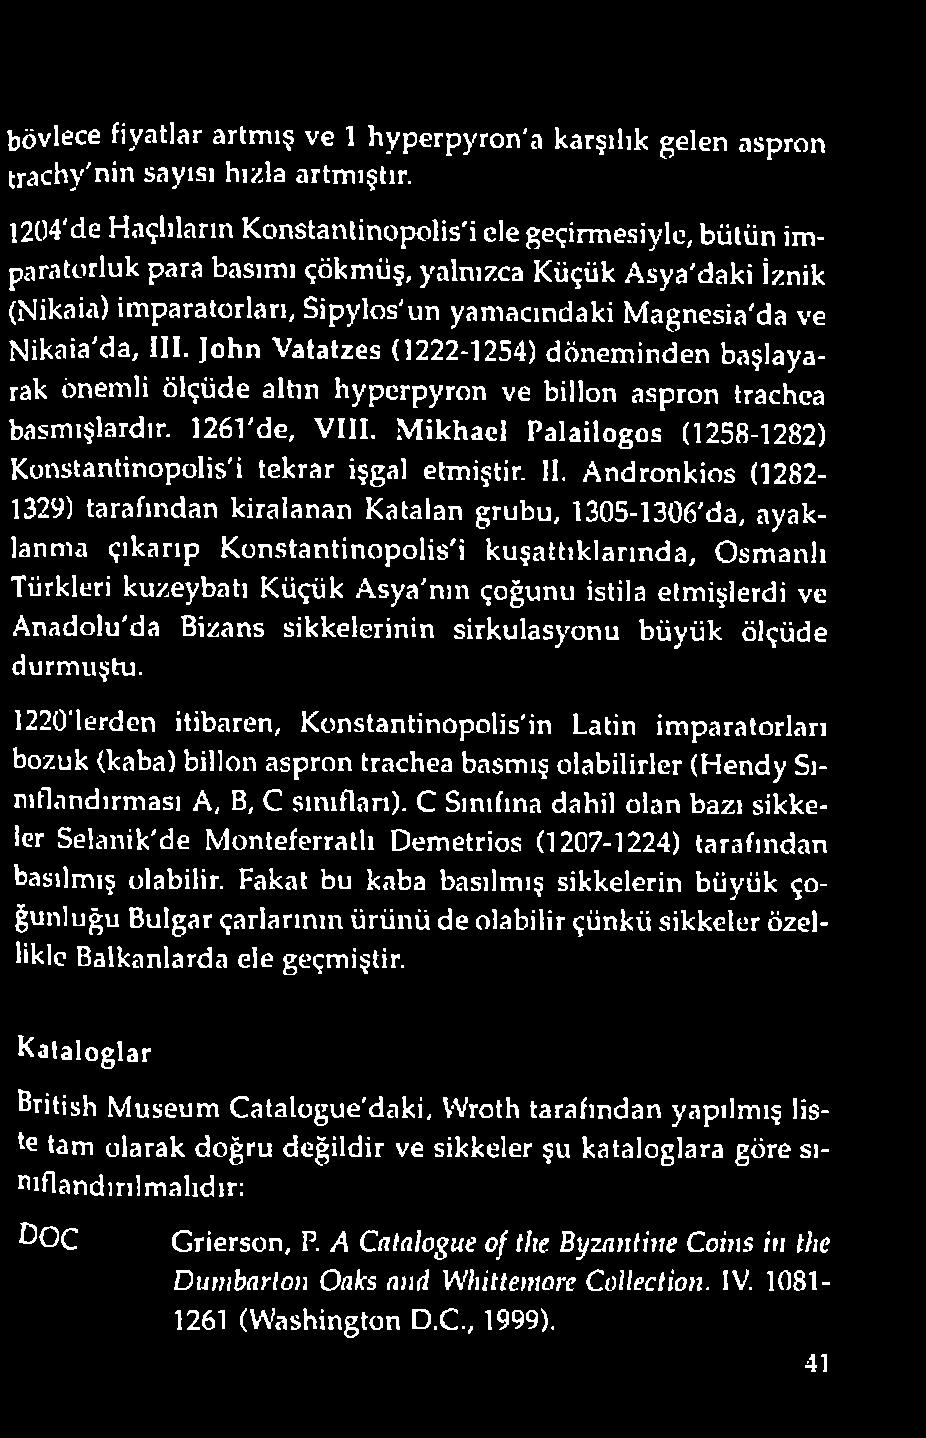 Andronkios (1282-1329) tarafından kiralanan Katalan grubu, 1305-1306'da, ayaklanma çıkarıp Konstantinopolis'i kuşattıklarında, Osmanlı Türkleri kuzeybatı Küçük Asya'nın çoğunu istila etmişlerdi ve